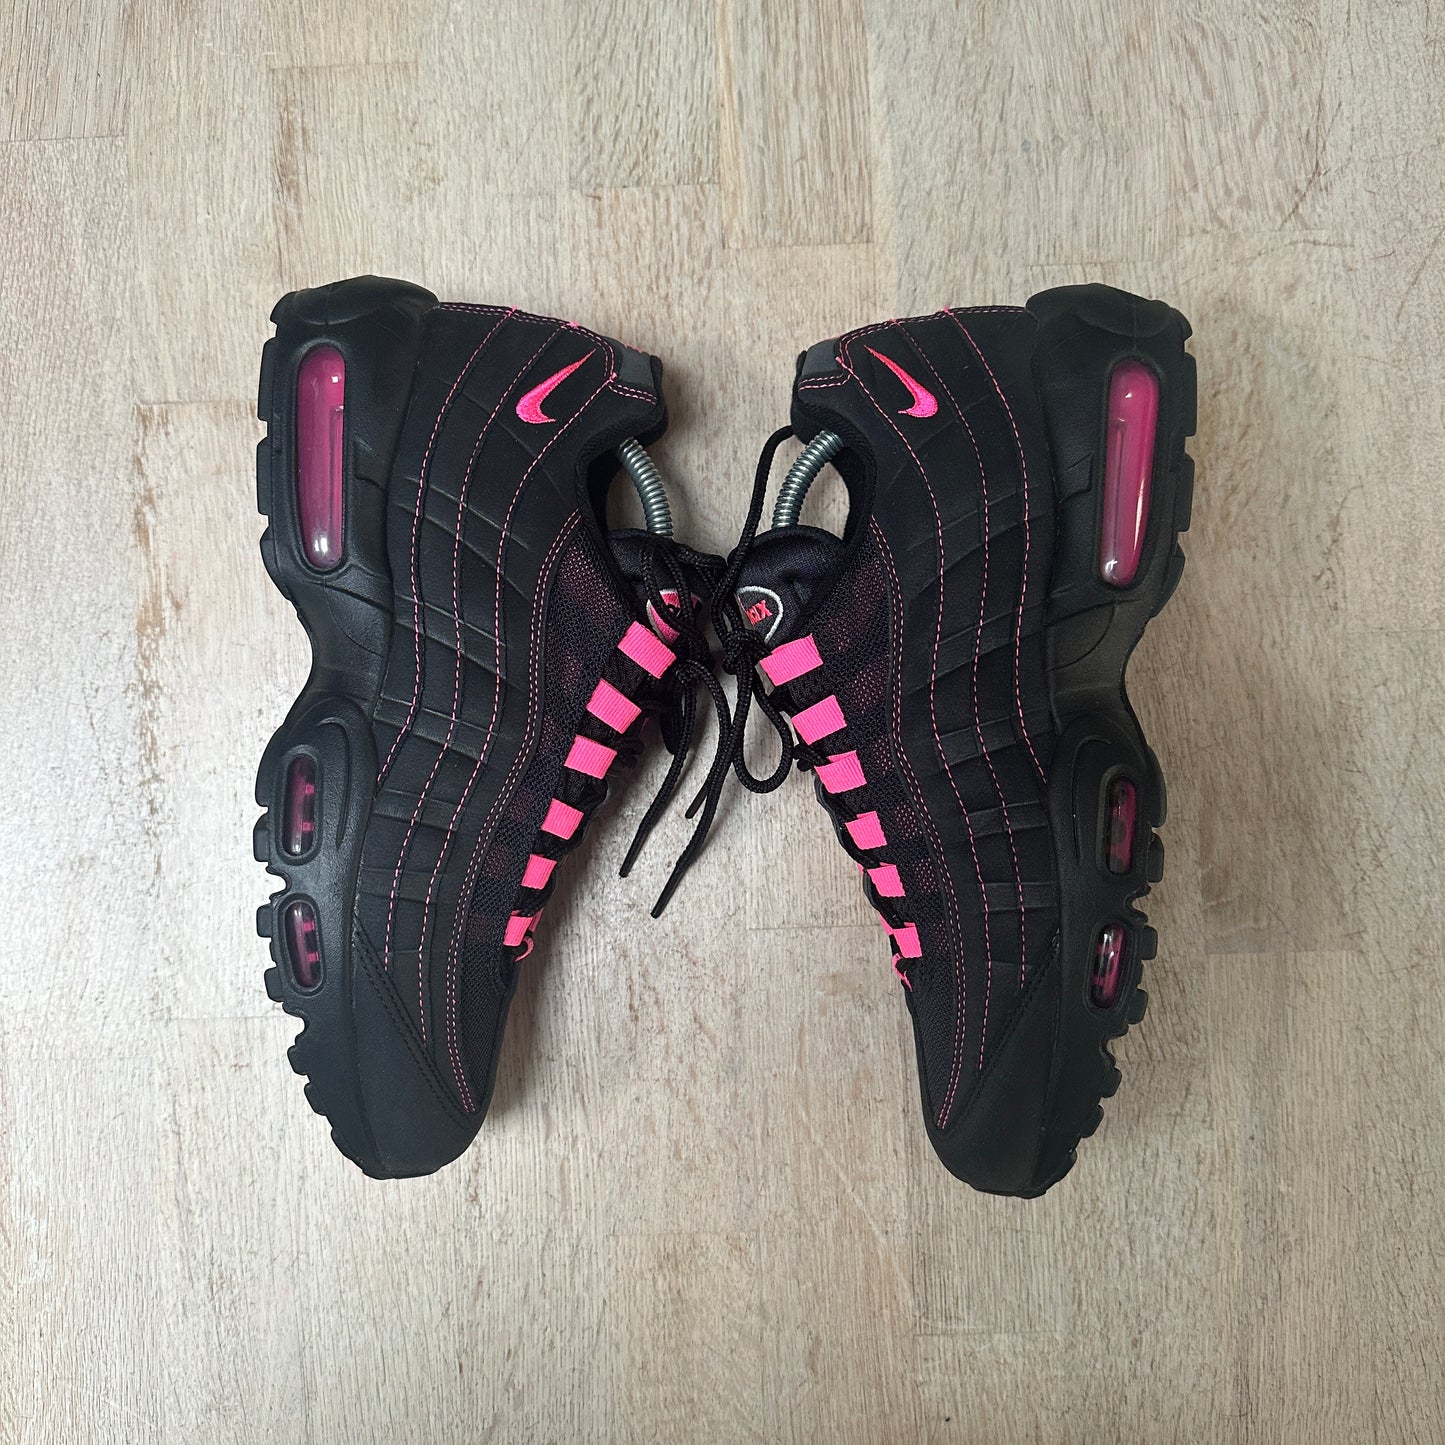 Nike Air Max 95 - Pink Blast - UK8